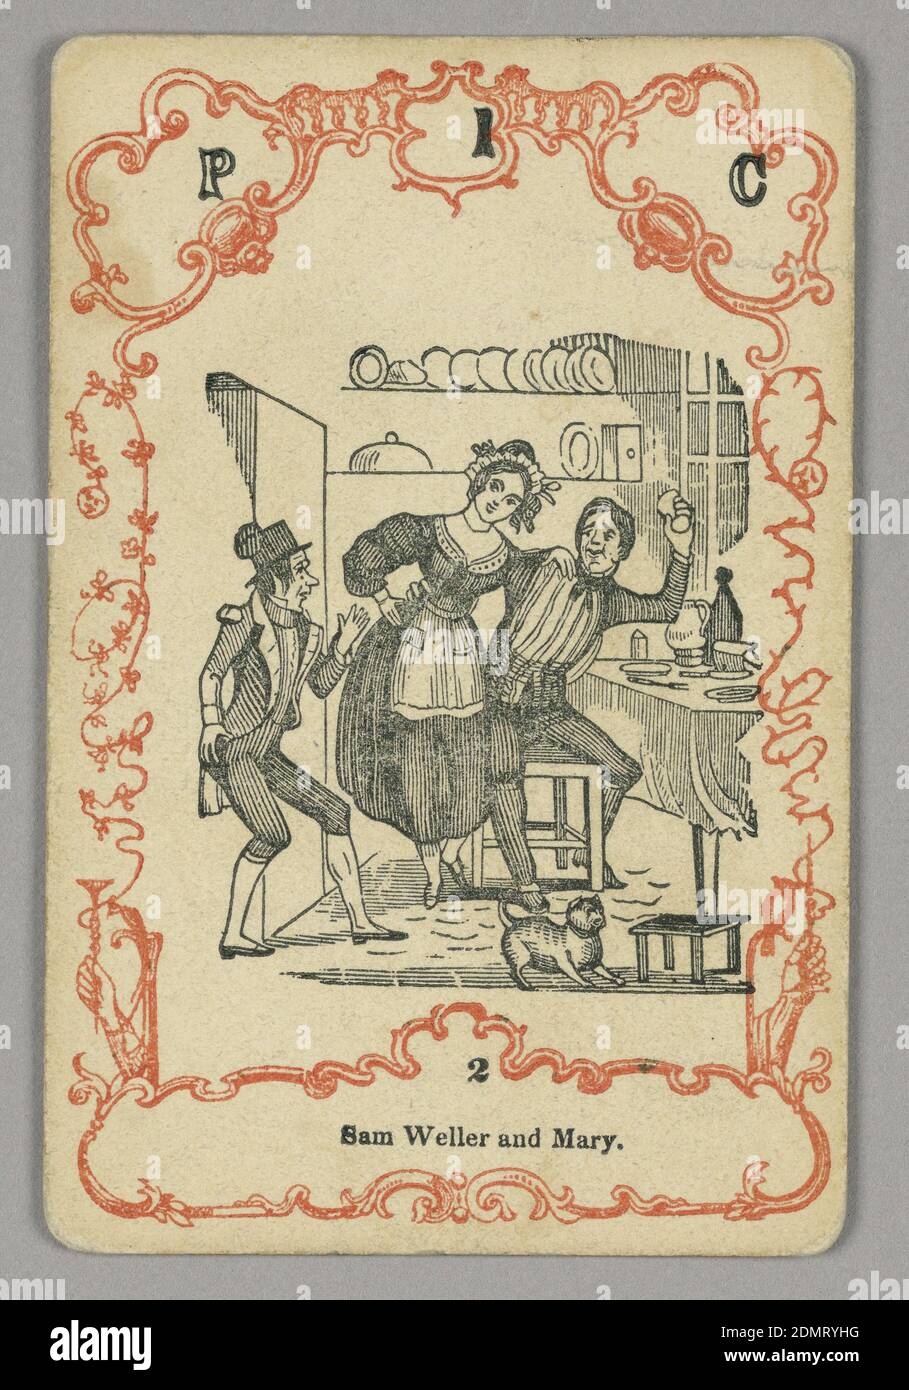 Jugar a la carta, tinta roja y negra, papel, en la parte superior: P 1 C; debajo de la imagen central: 2, Europa, ca. 1855, jugando a la carta Foto de stock